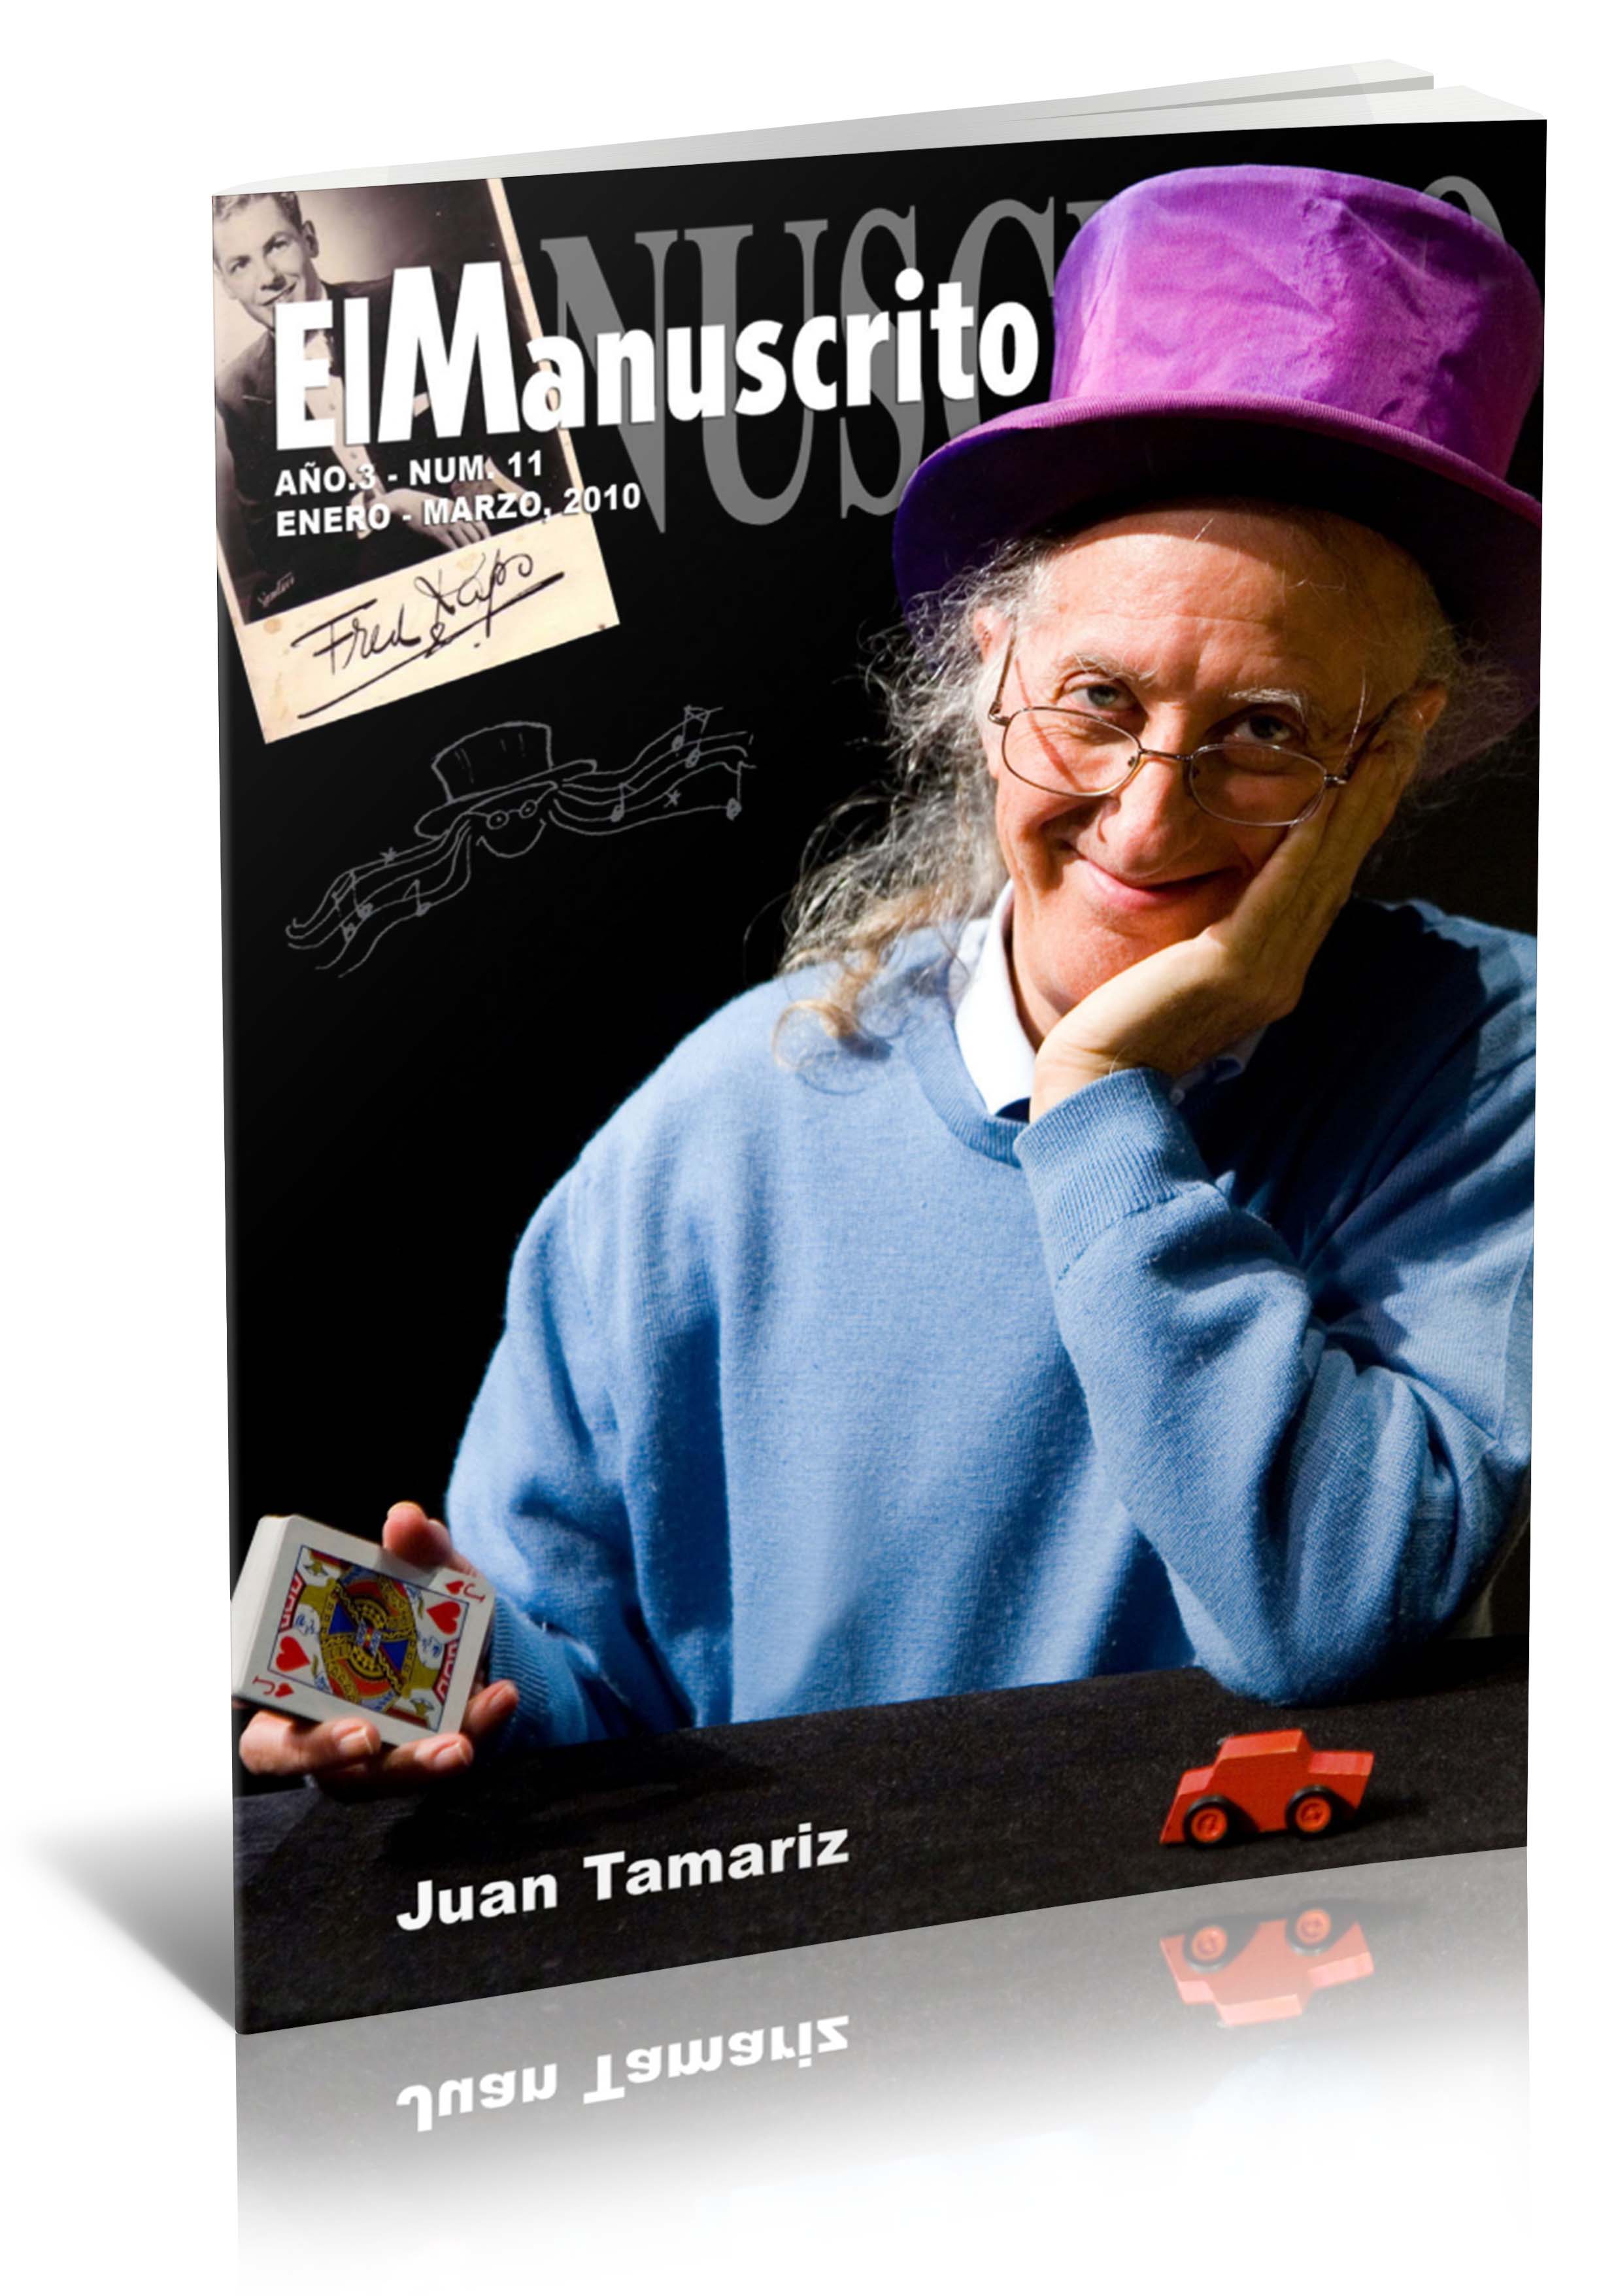 El Manuscrito Vol. 11 - Juan Tamariz